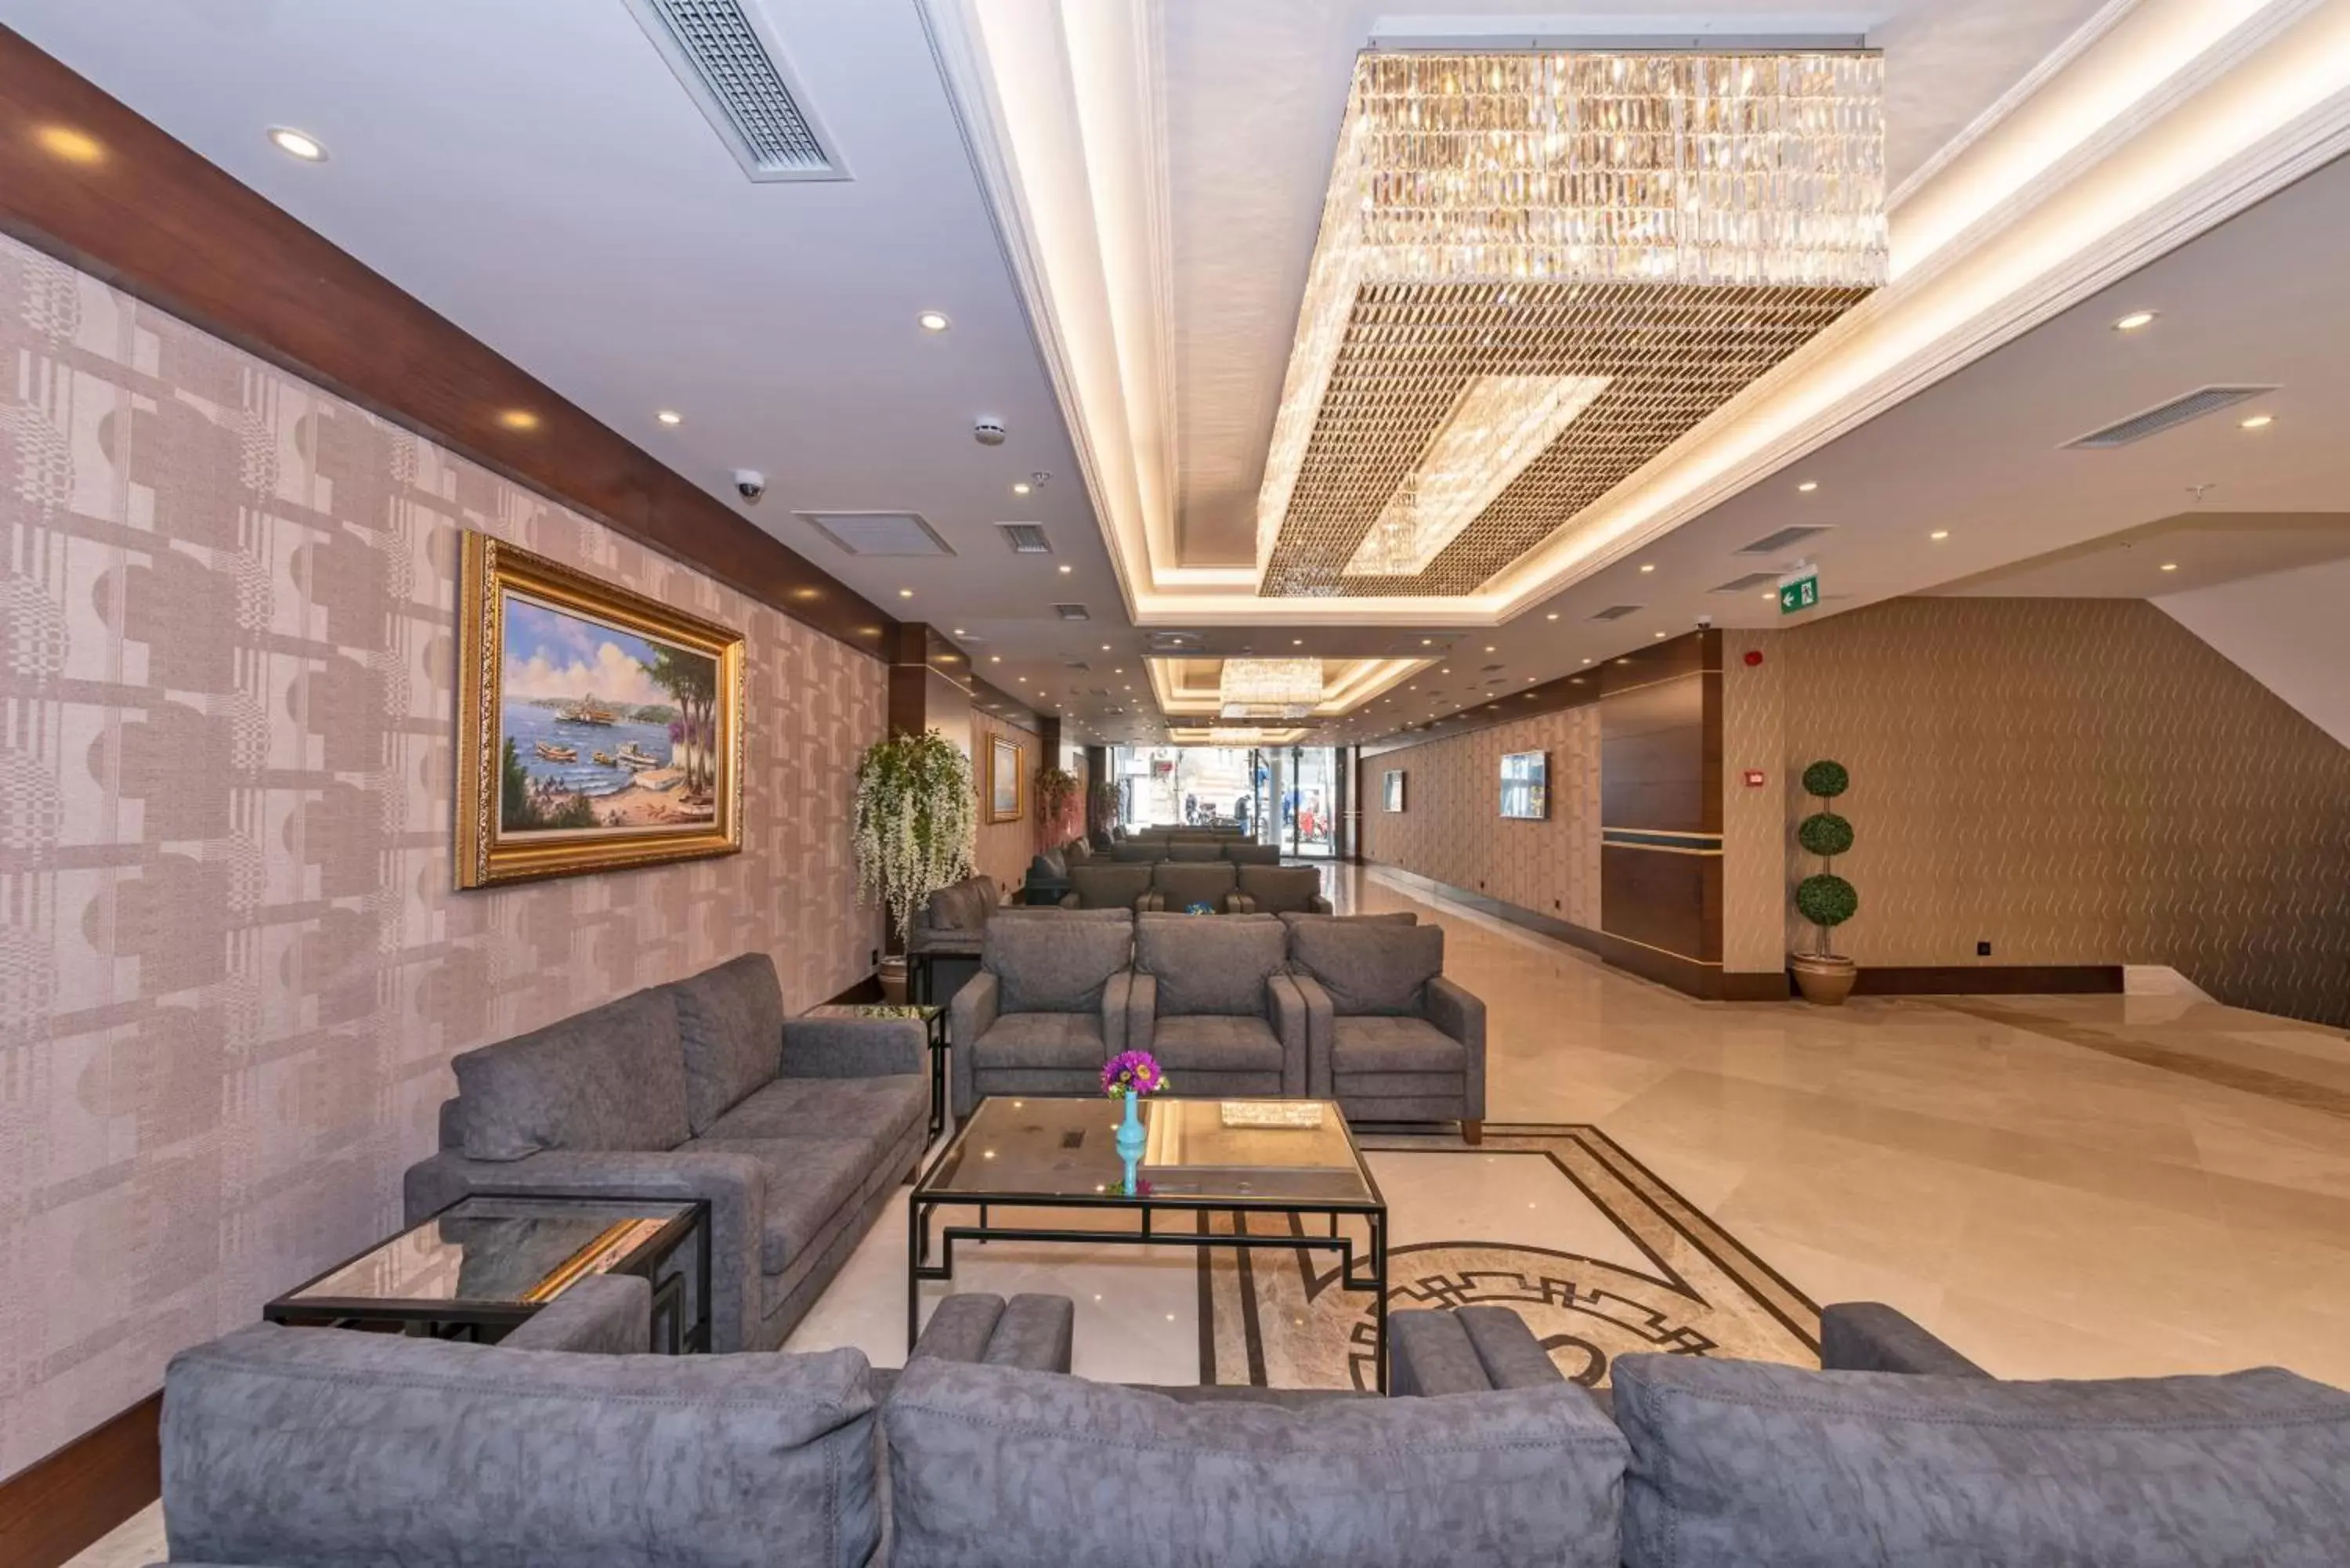 Lobby or reception, Lobby/Reception in Piya Sport Hotel